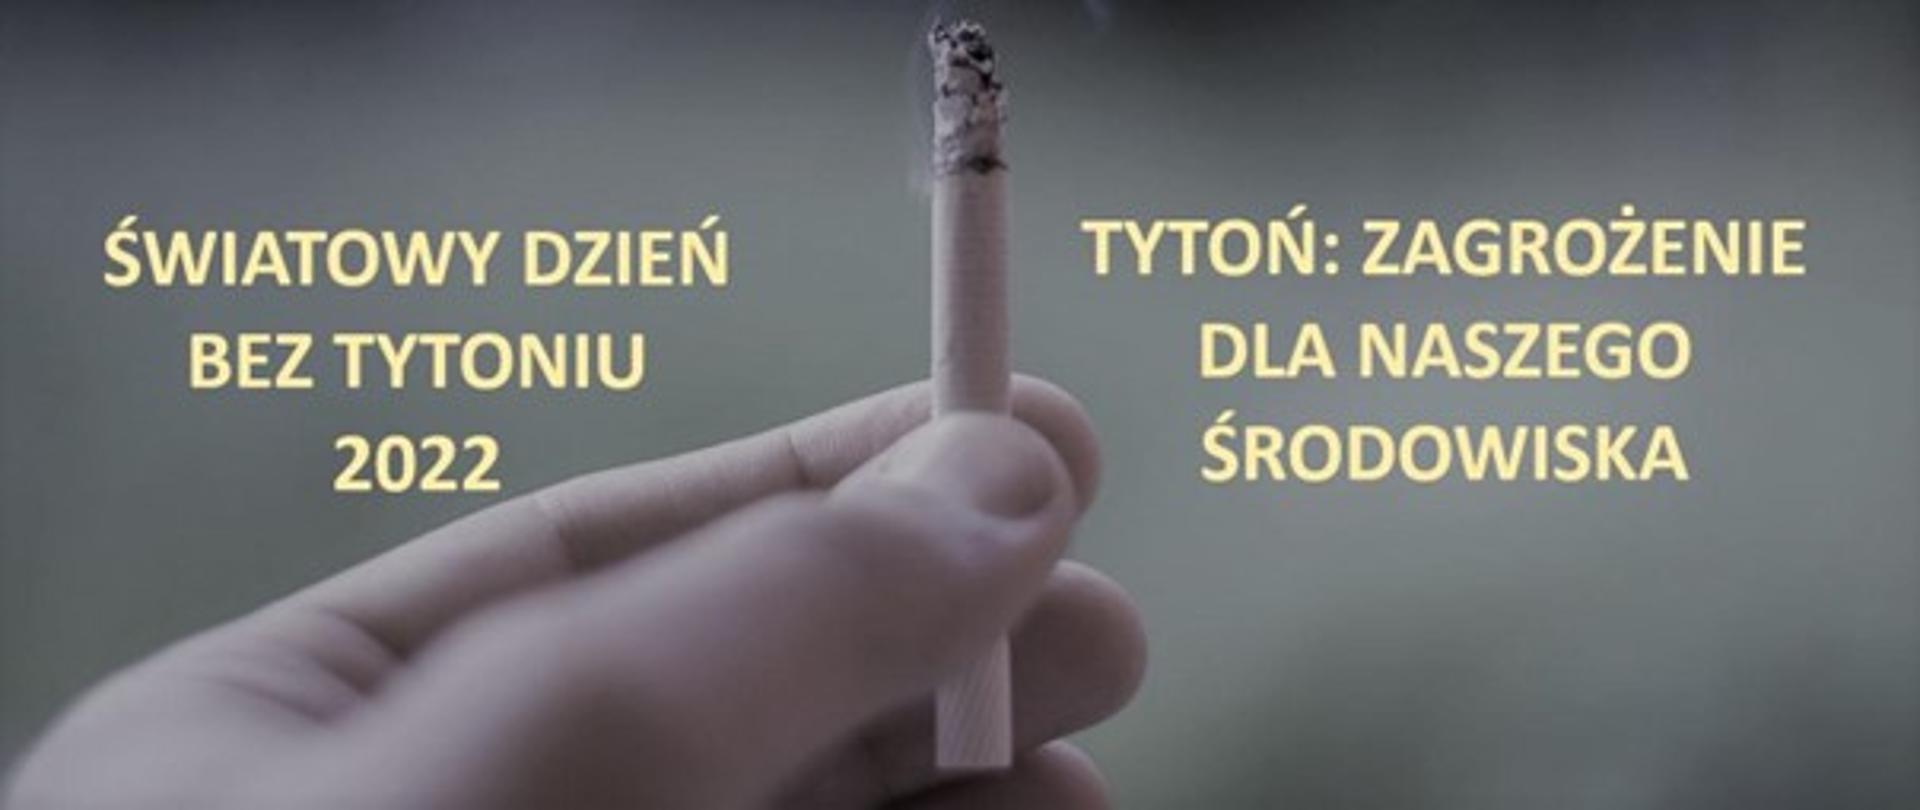 31 Maja Światowy Dzień Bez Tytoniu